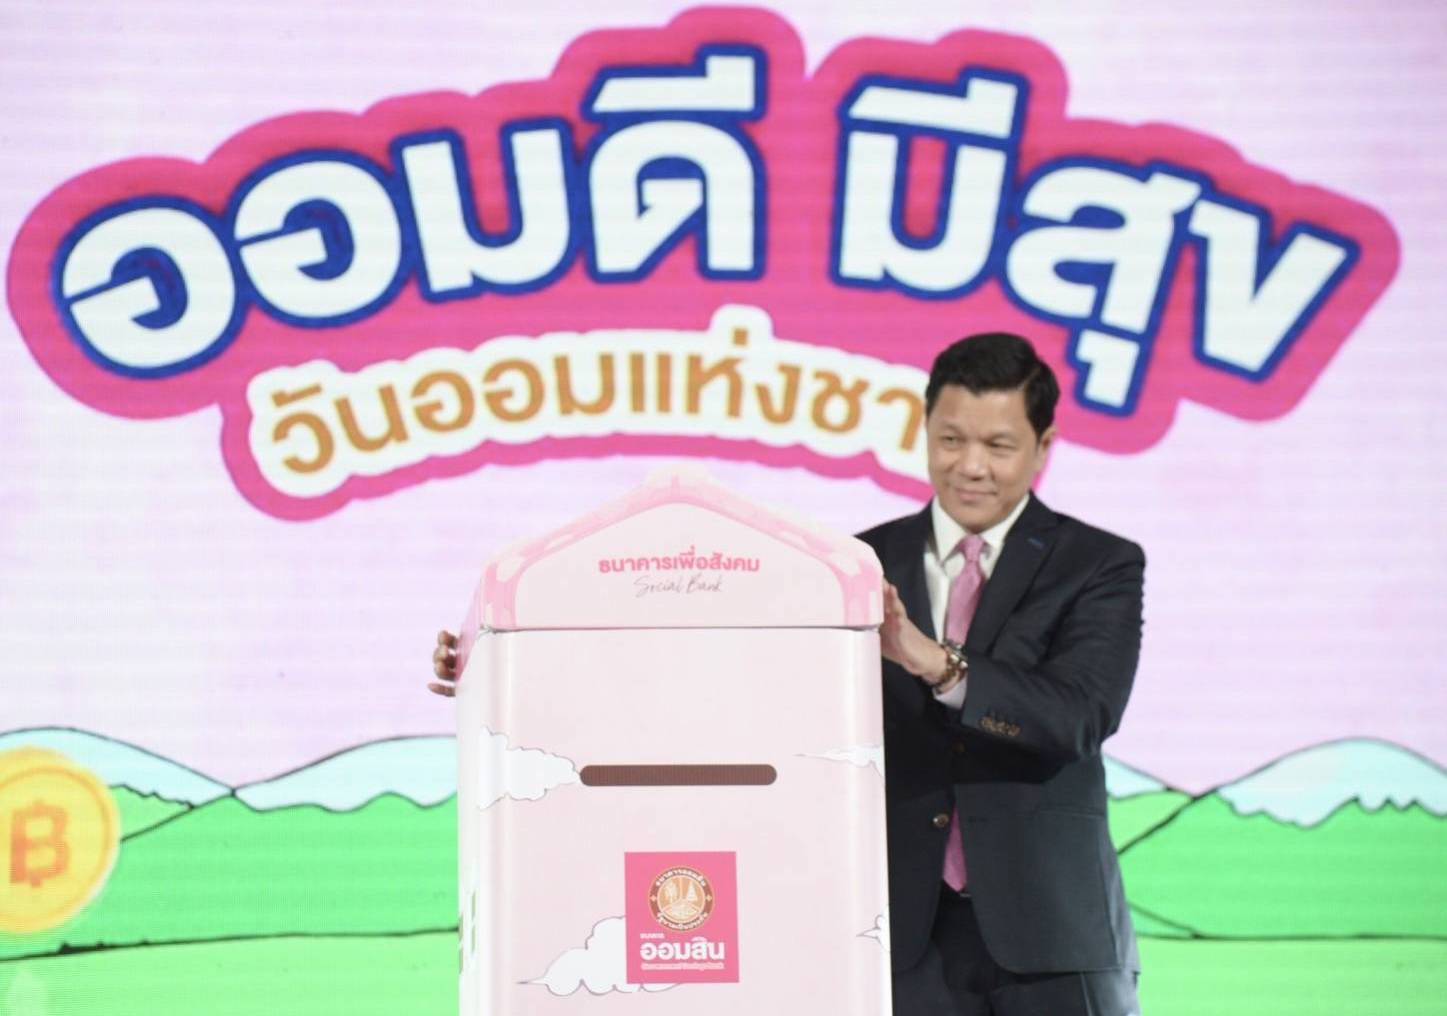 ออมสินกระตุ้นคนไทยใส่ใจออม จัดเต็มโปรเงินฝาก เนื่องในวันออมแห่งชาติ 31 ต.ค. 66